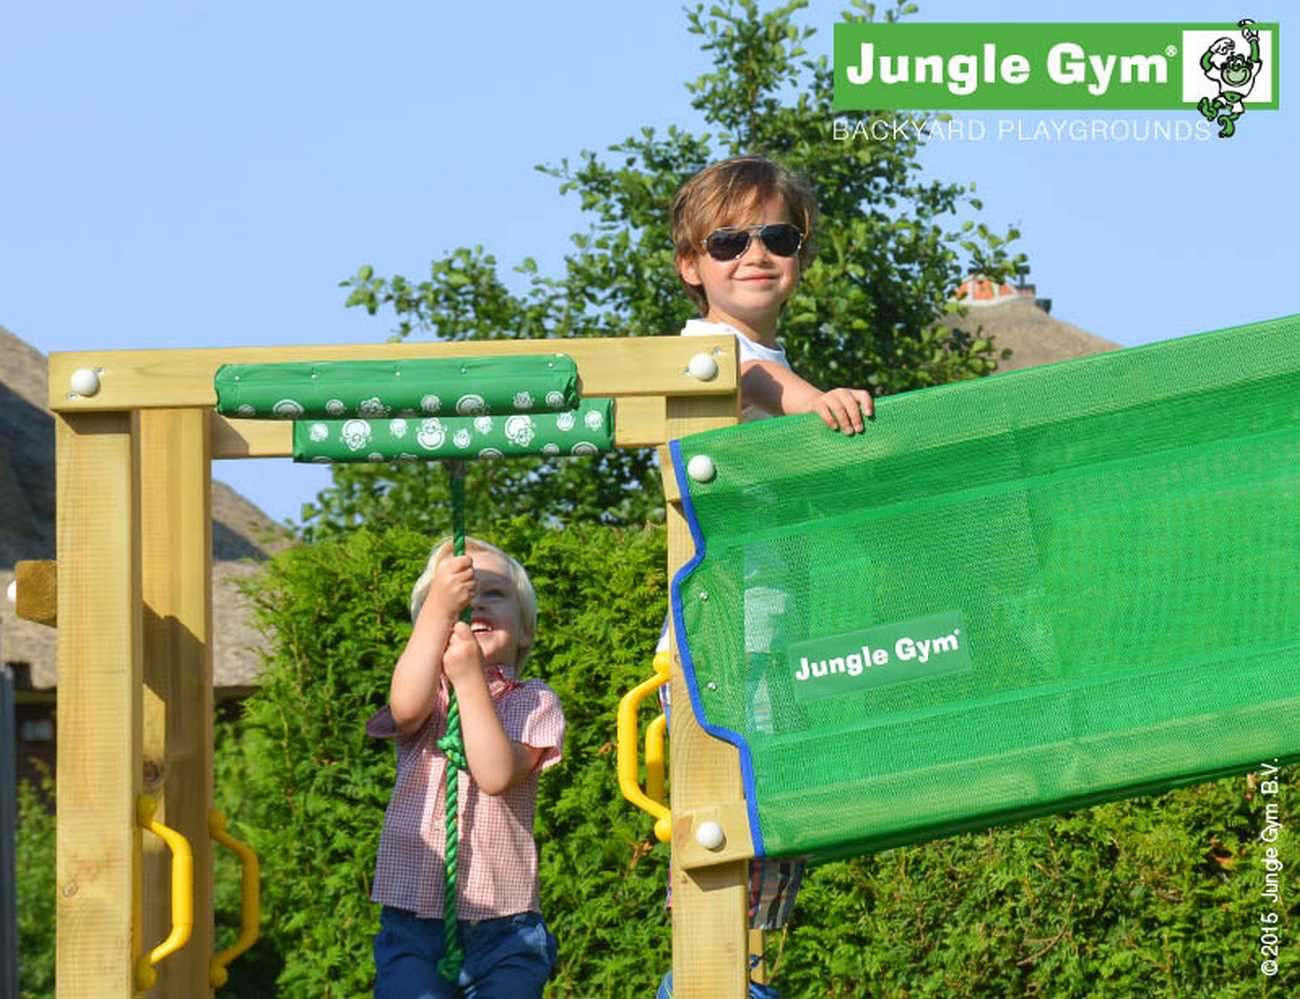 Jungle Gym Bridge-Modul in Douglasie natur